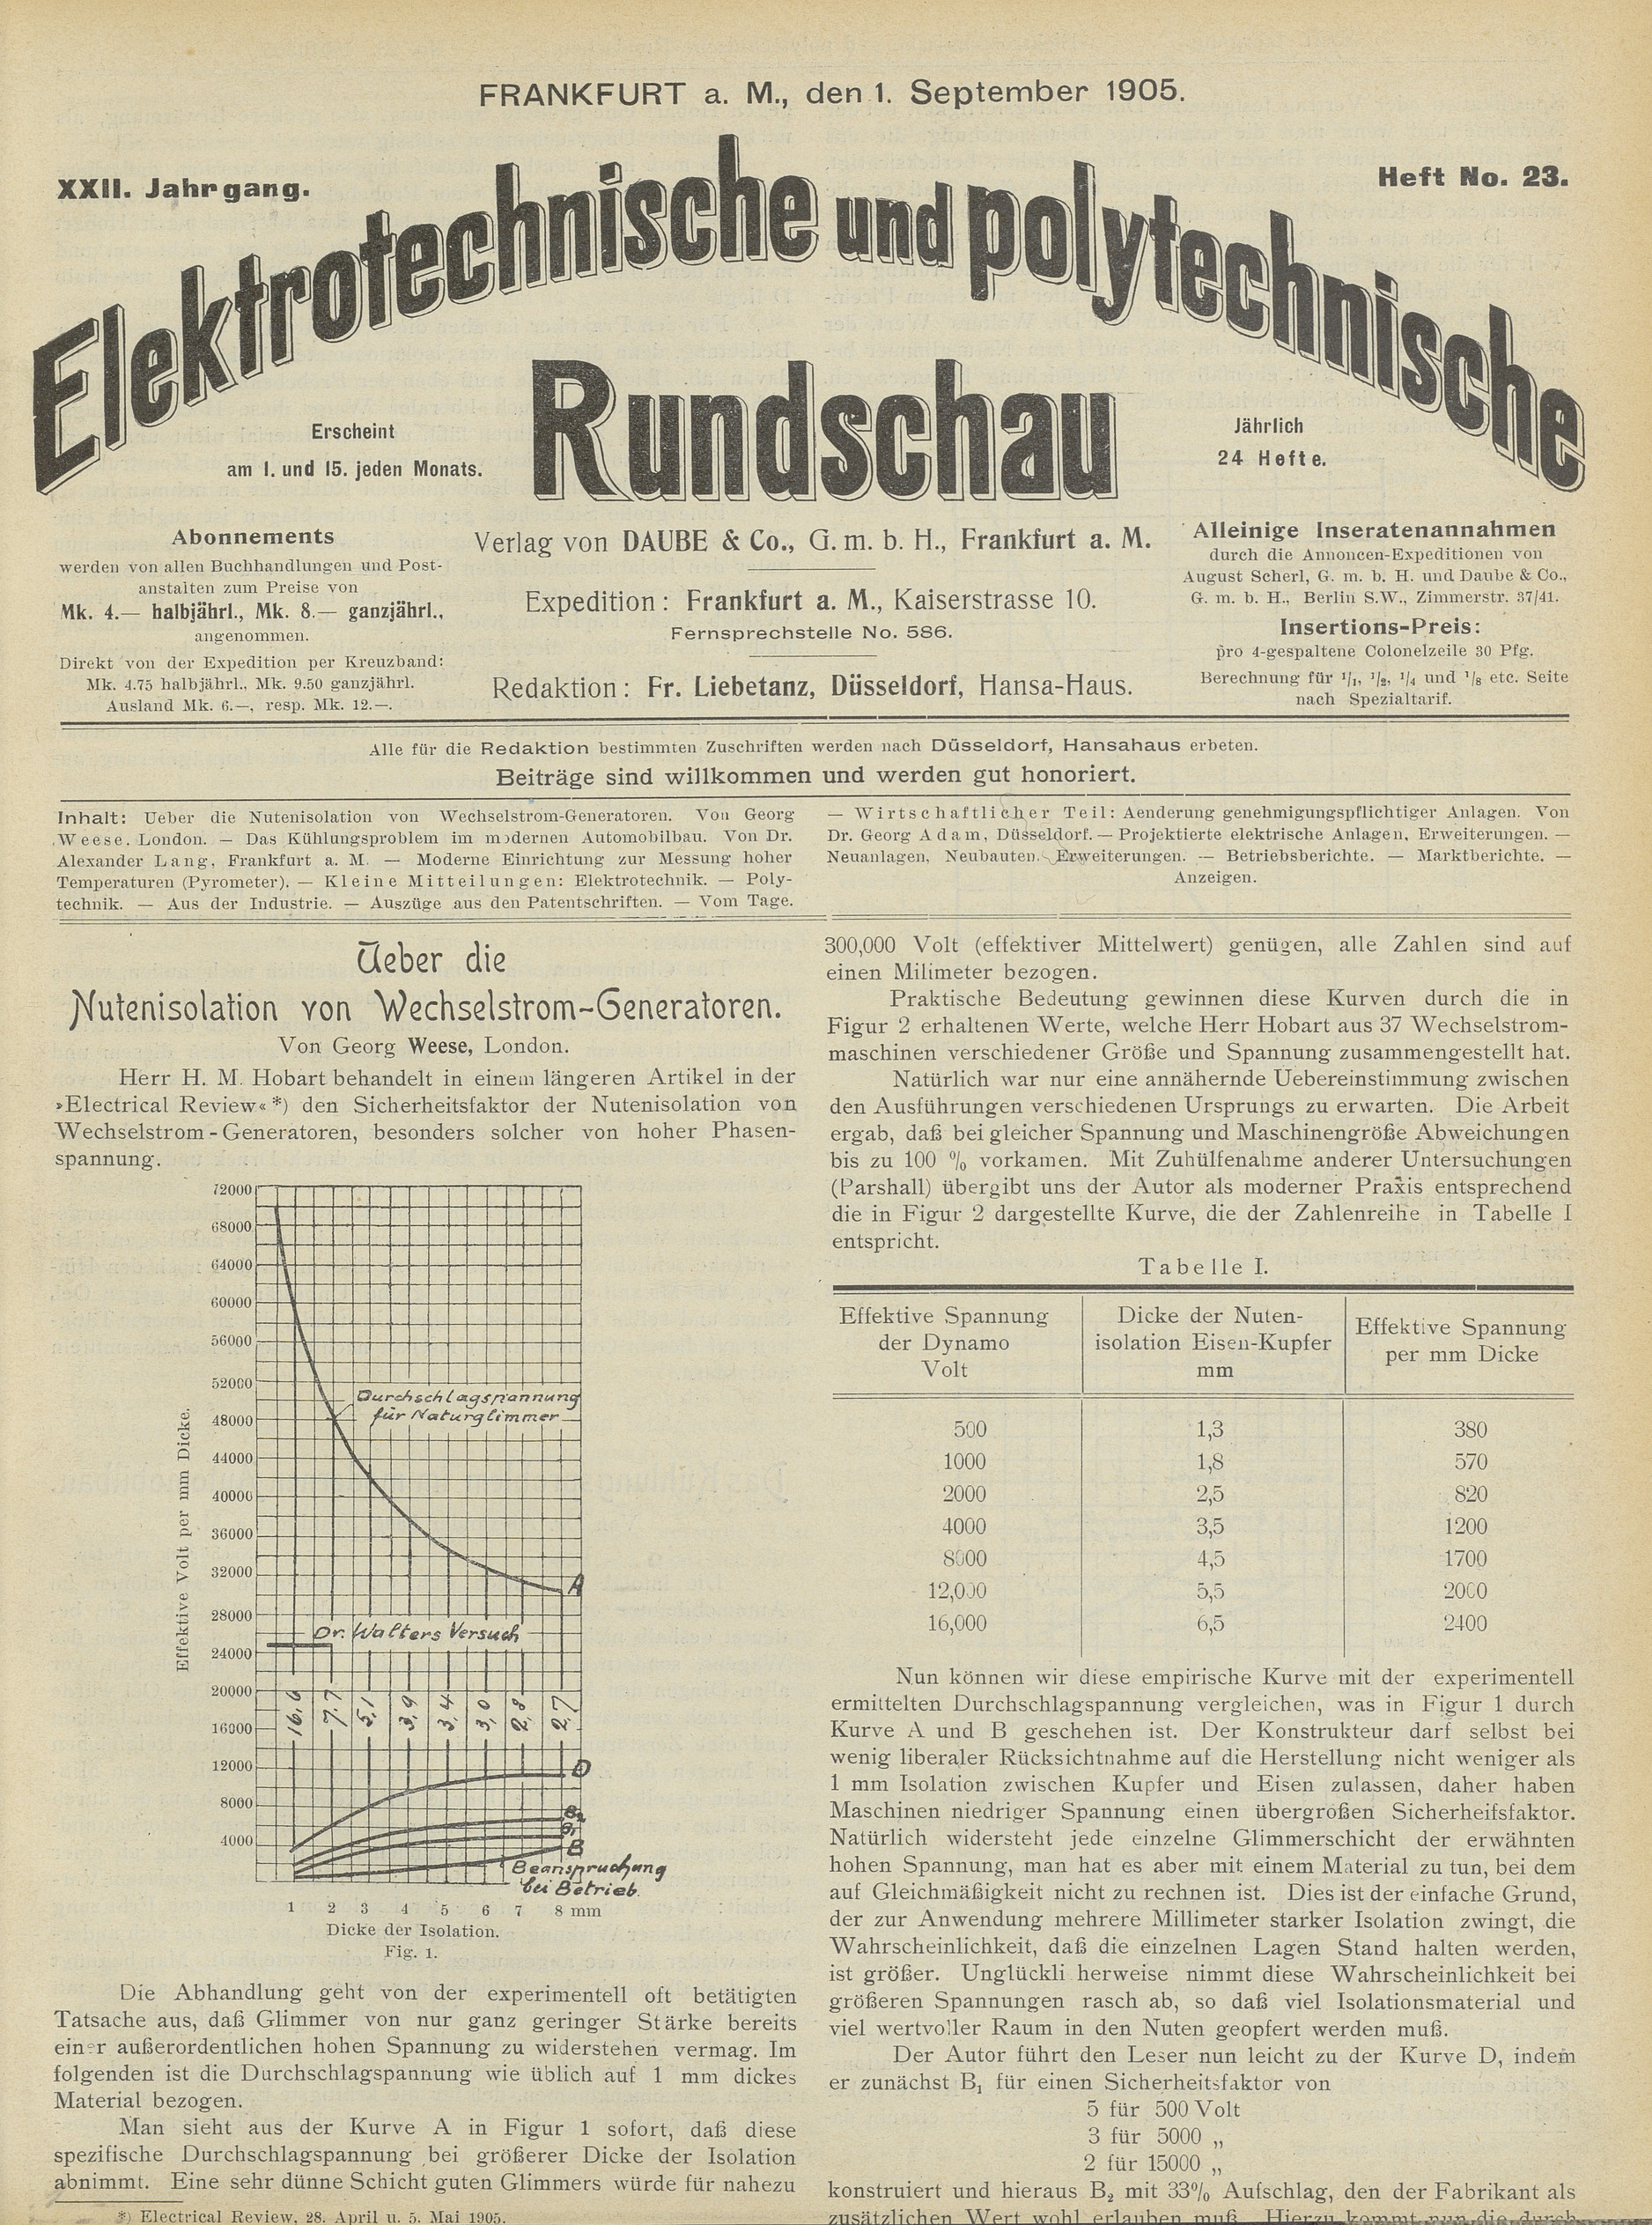 Elektrotechnische und polytechnische Rundschau, XXII. Jahrgang, Heft No. 23